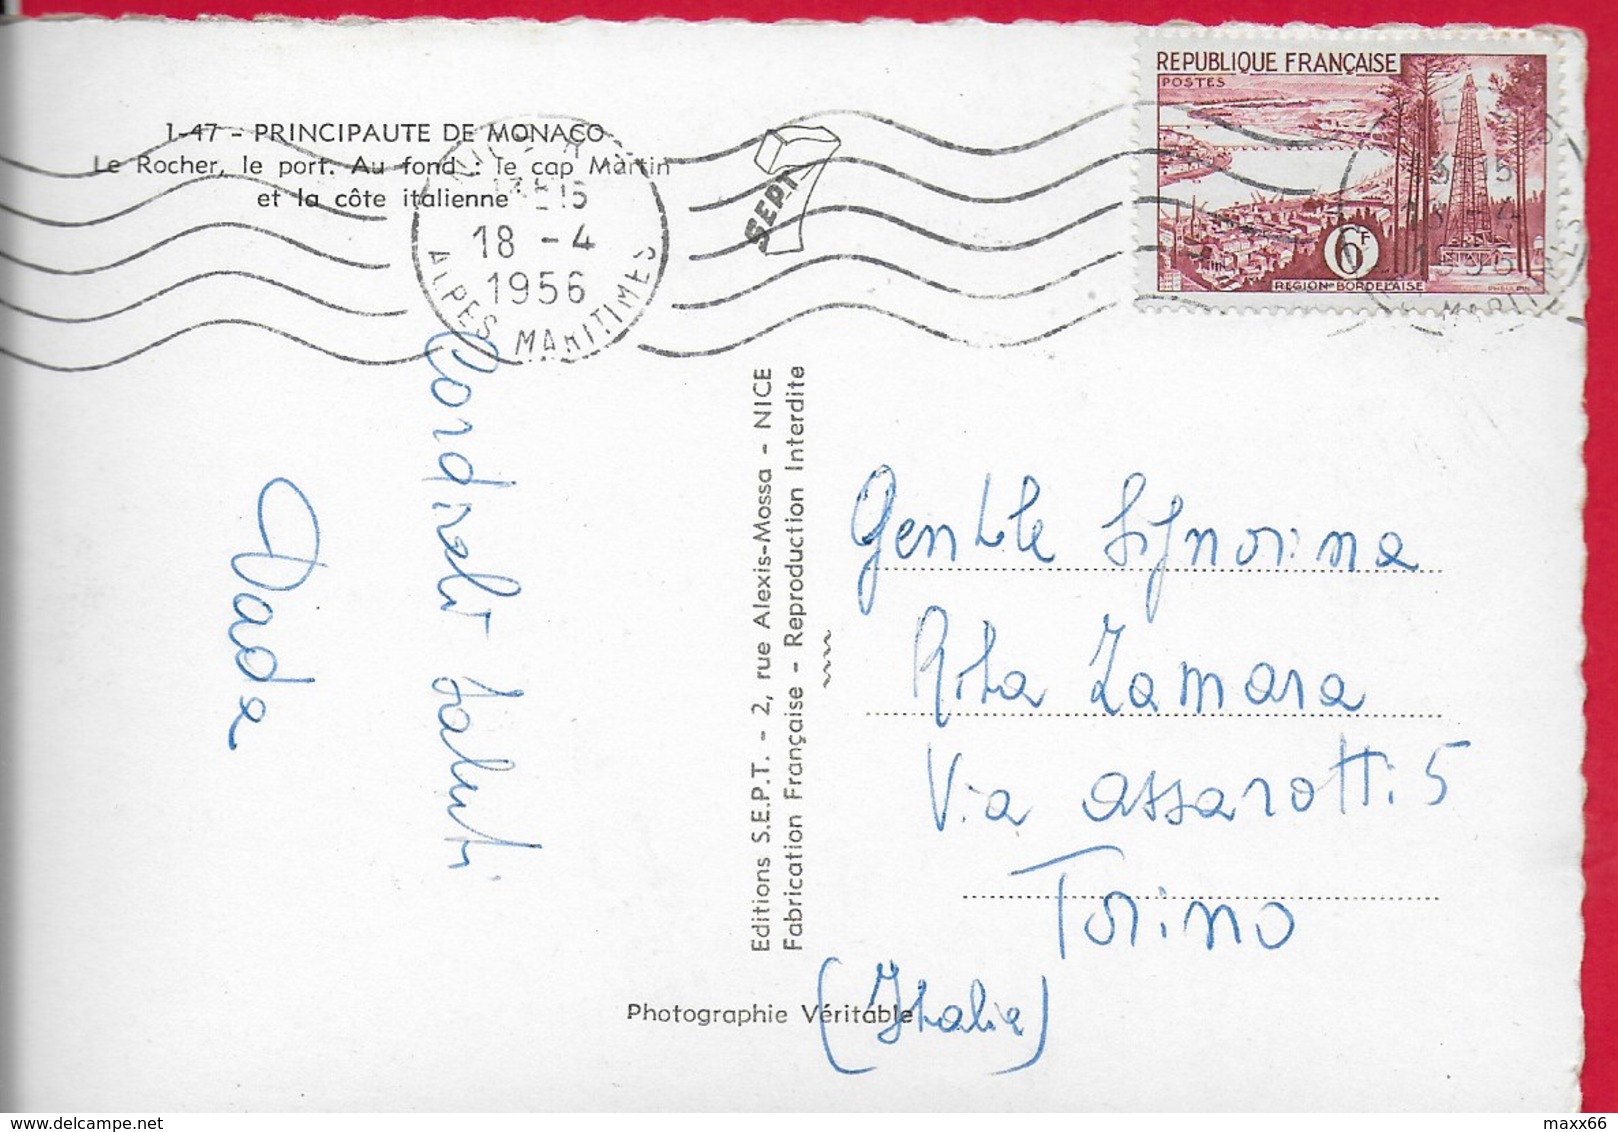 CARTOLINA VG MONACO - Le Principaute - Le Rocher Le Port - Cap Martin Et La Cote Italienne - 10 X 15 - ANN. 1956 - Viste Panoramiche, Panorama